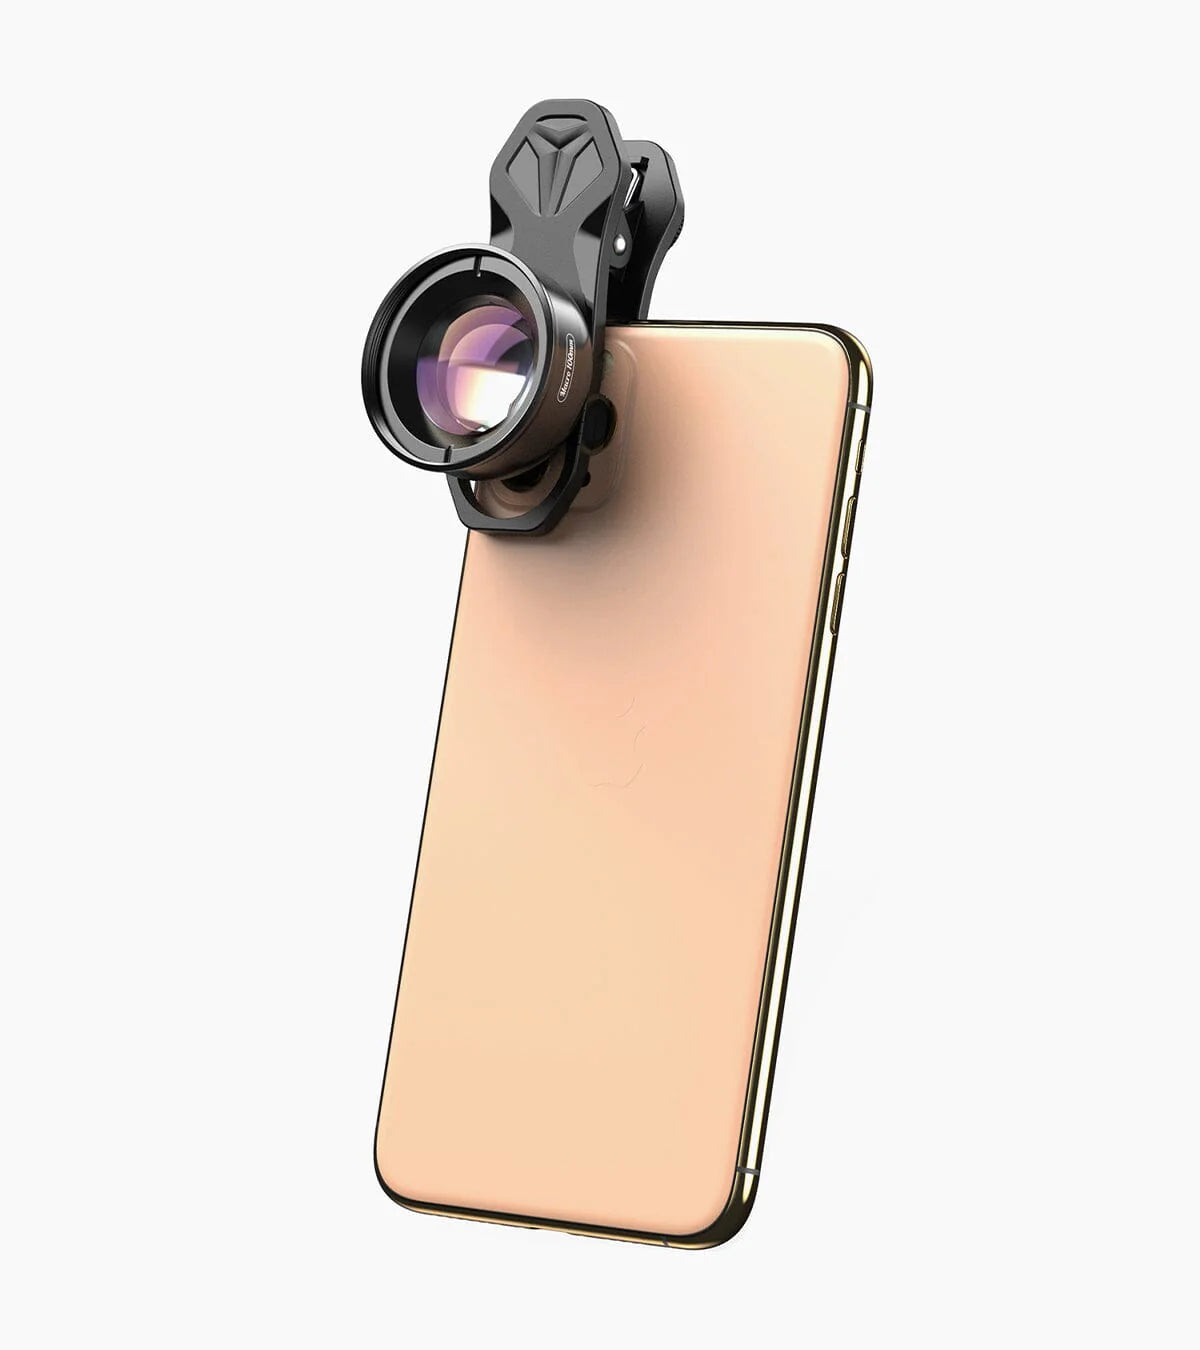 Apexel - Phone HD 100mm Macro Lens